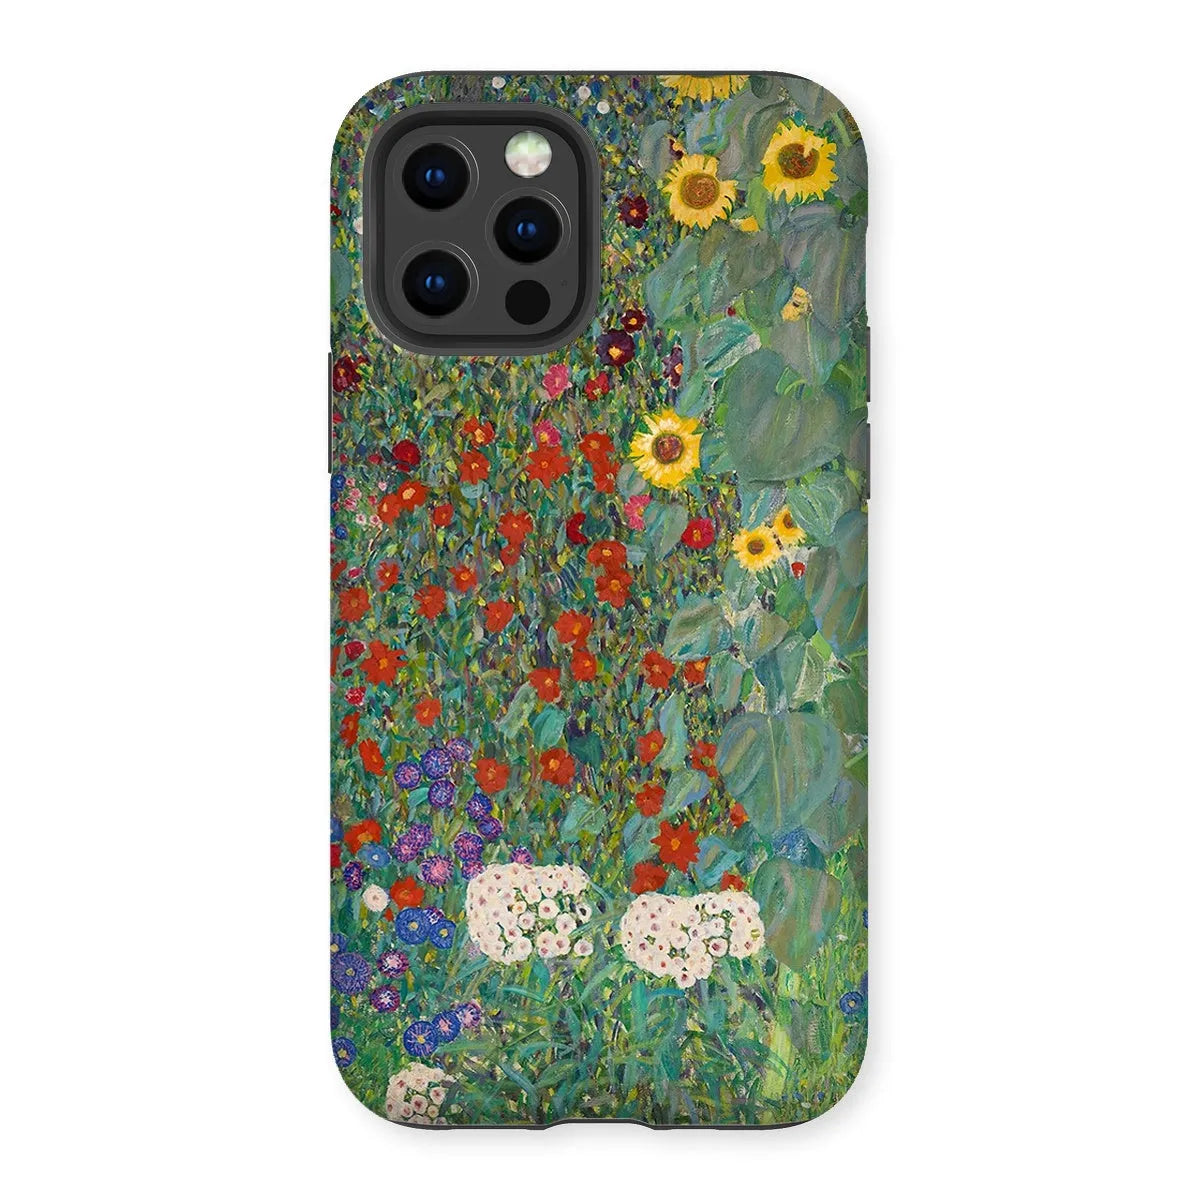 Farm Garden With Sunflowers Art Phone Case - Gustav Klimt - Iphone 12 Pro / Matte - Mobile Phone Cases - Aesthetic Art